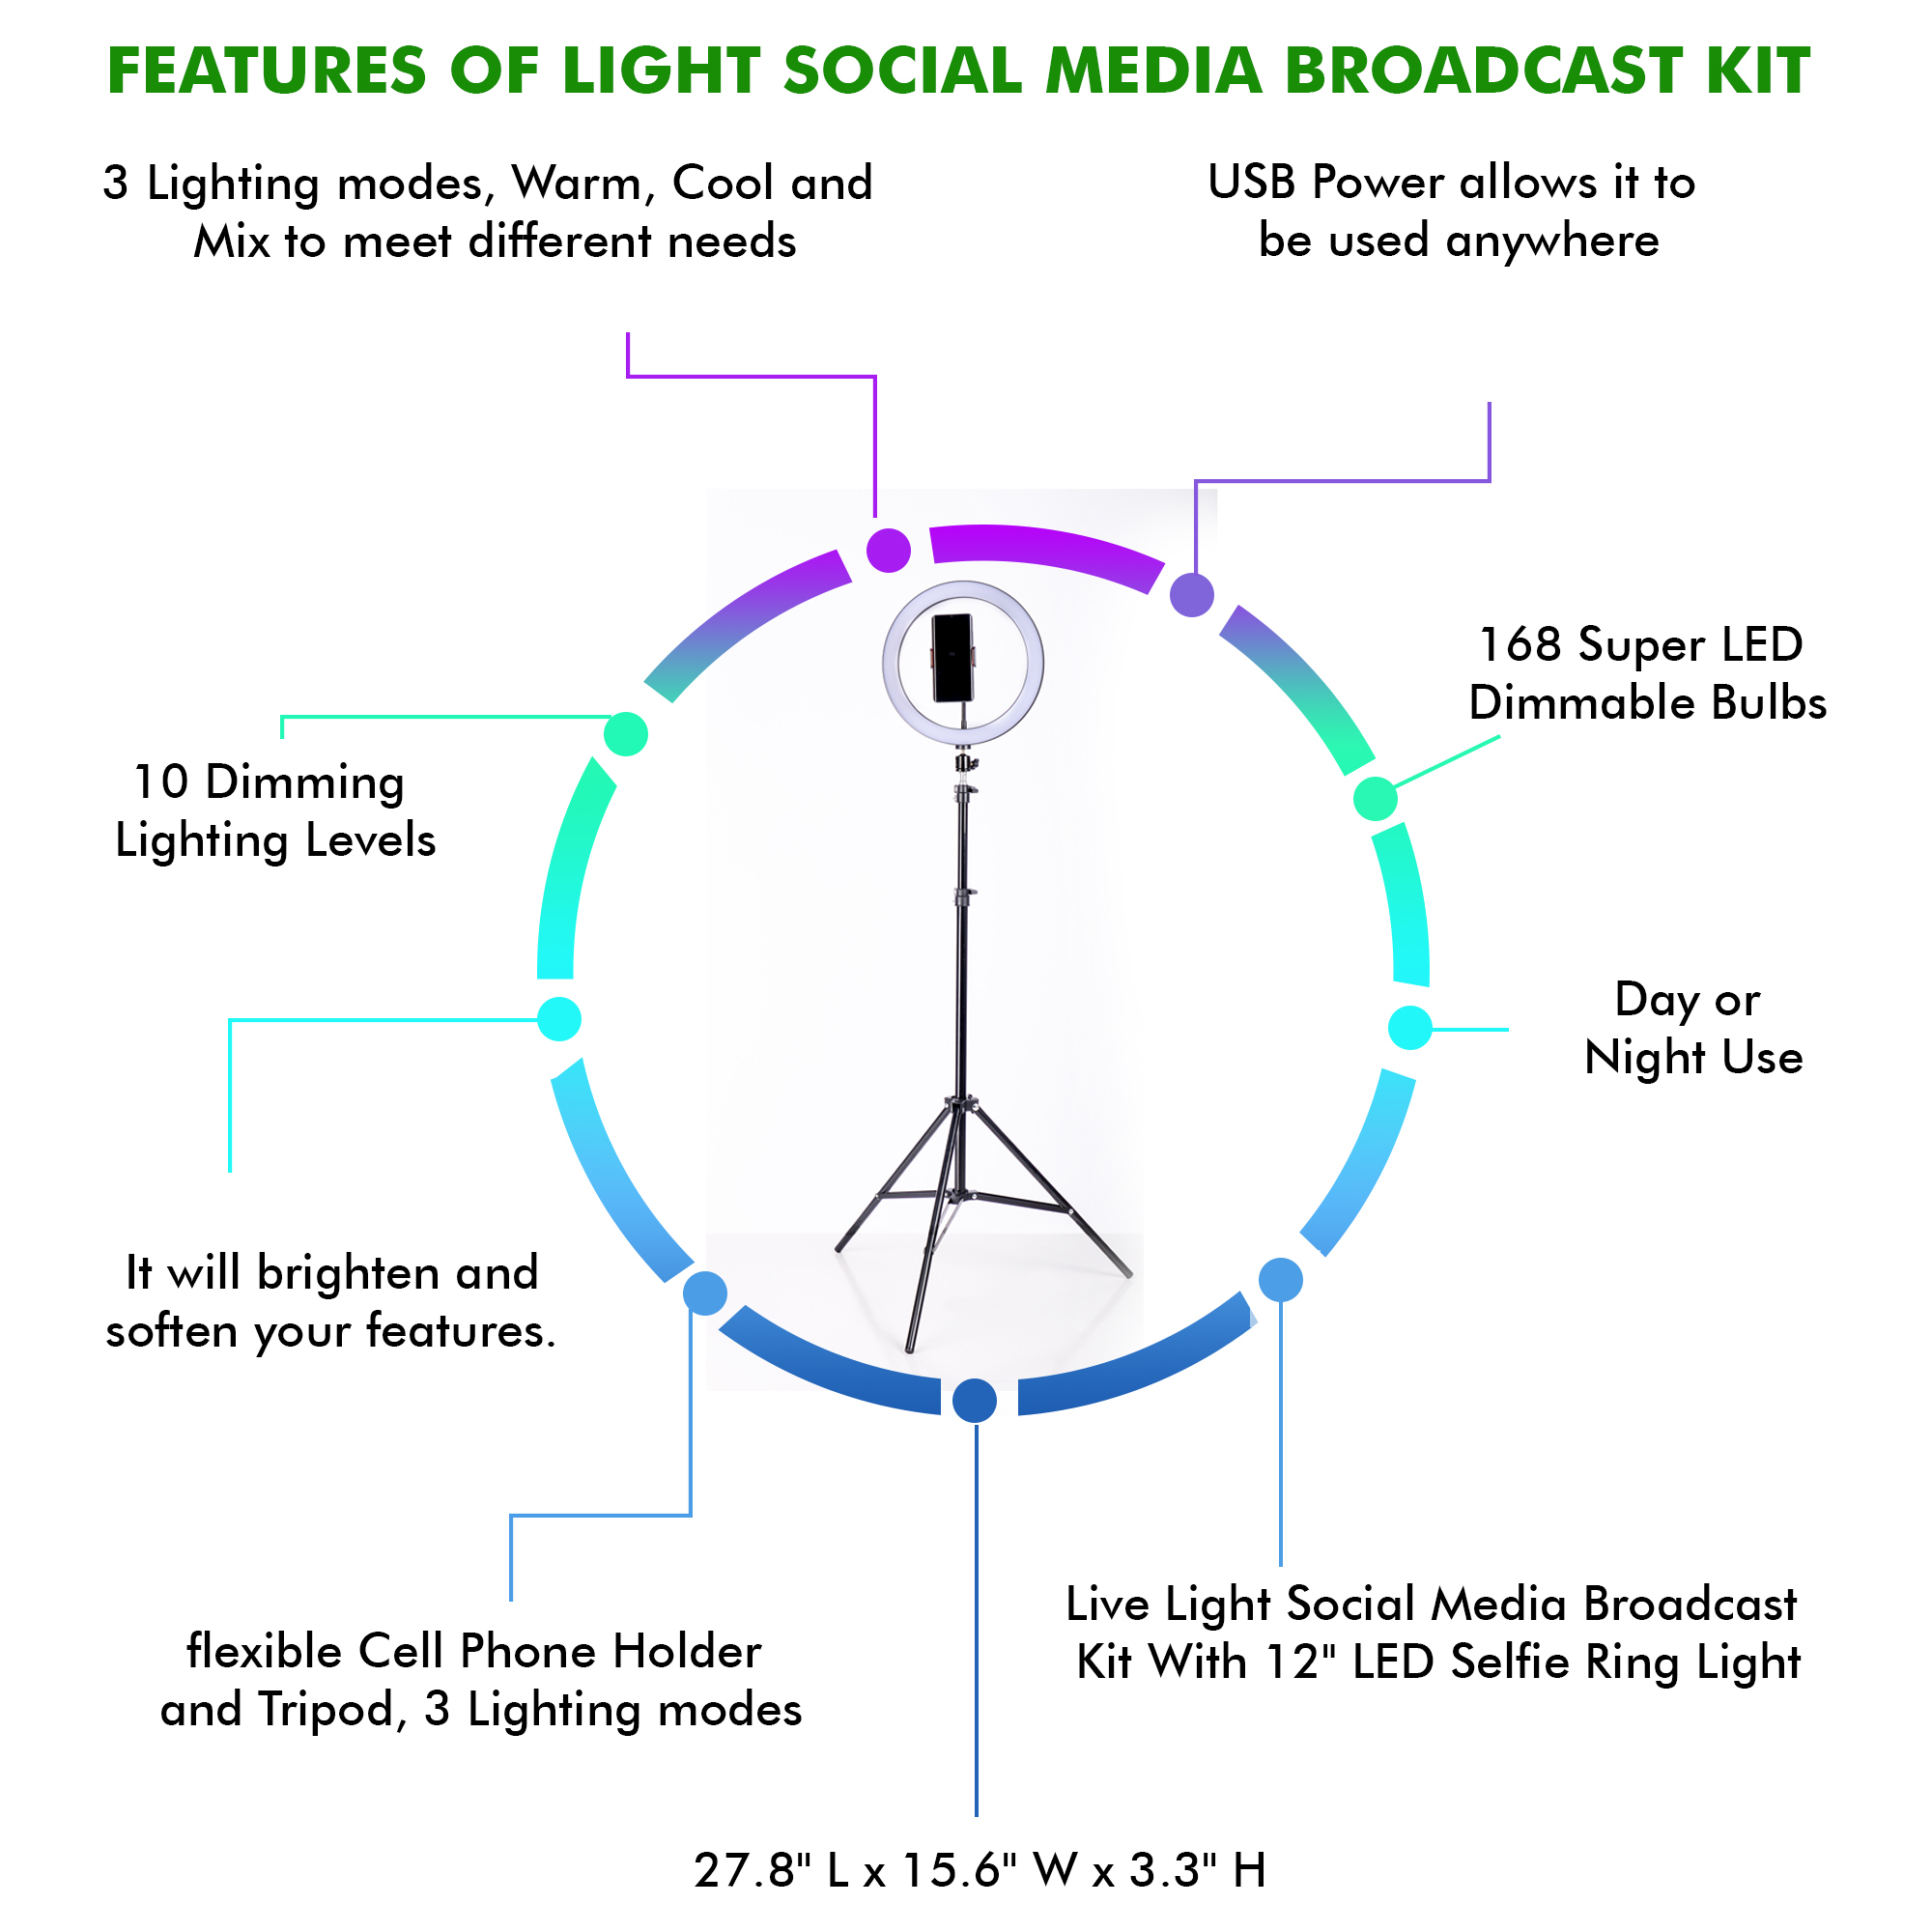 Technical Pro Live Light Social Media Broadcast Kit W/ 12 LED Selfie Ring Light, Flexible Cell Phone Holder & Tripod, 3 Lighting Modes